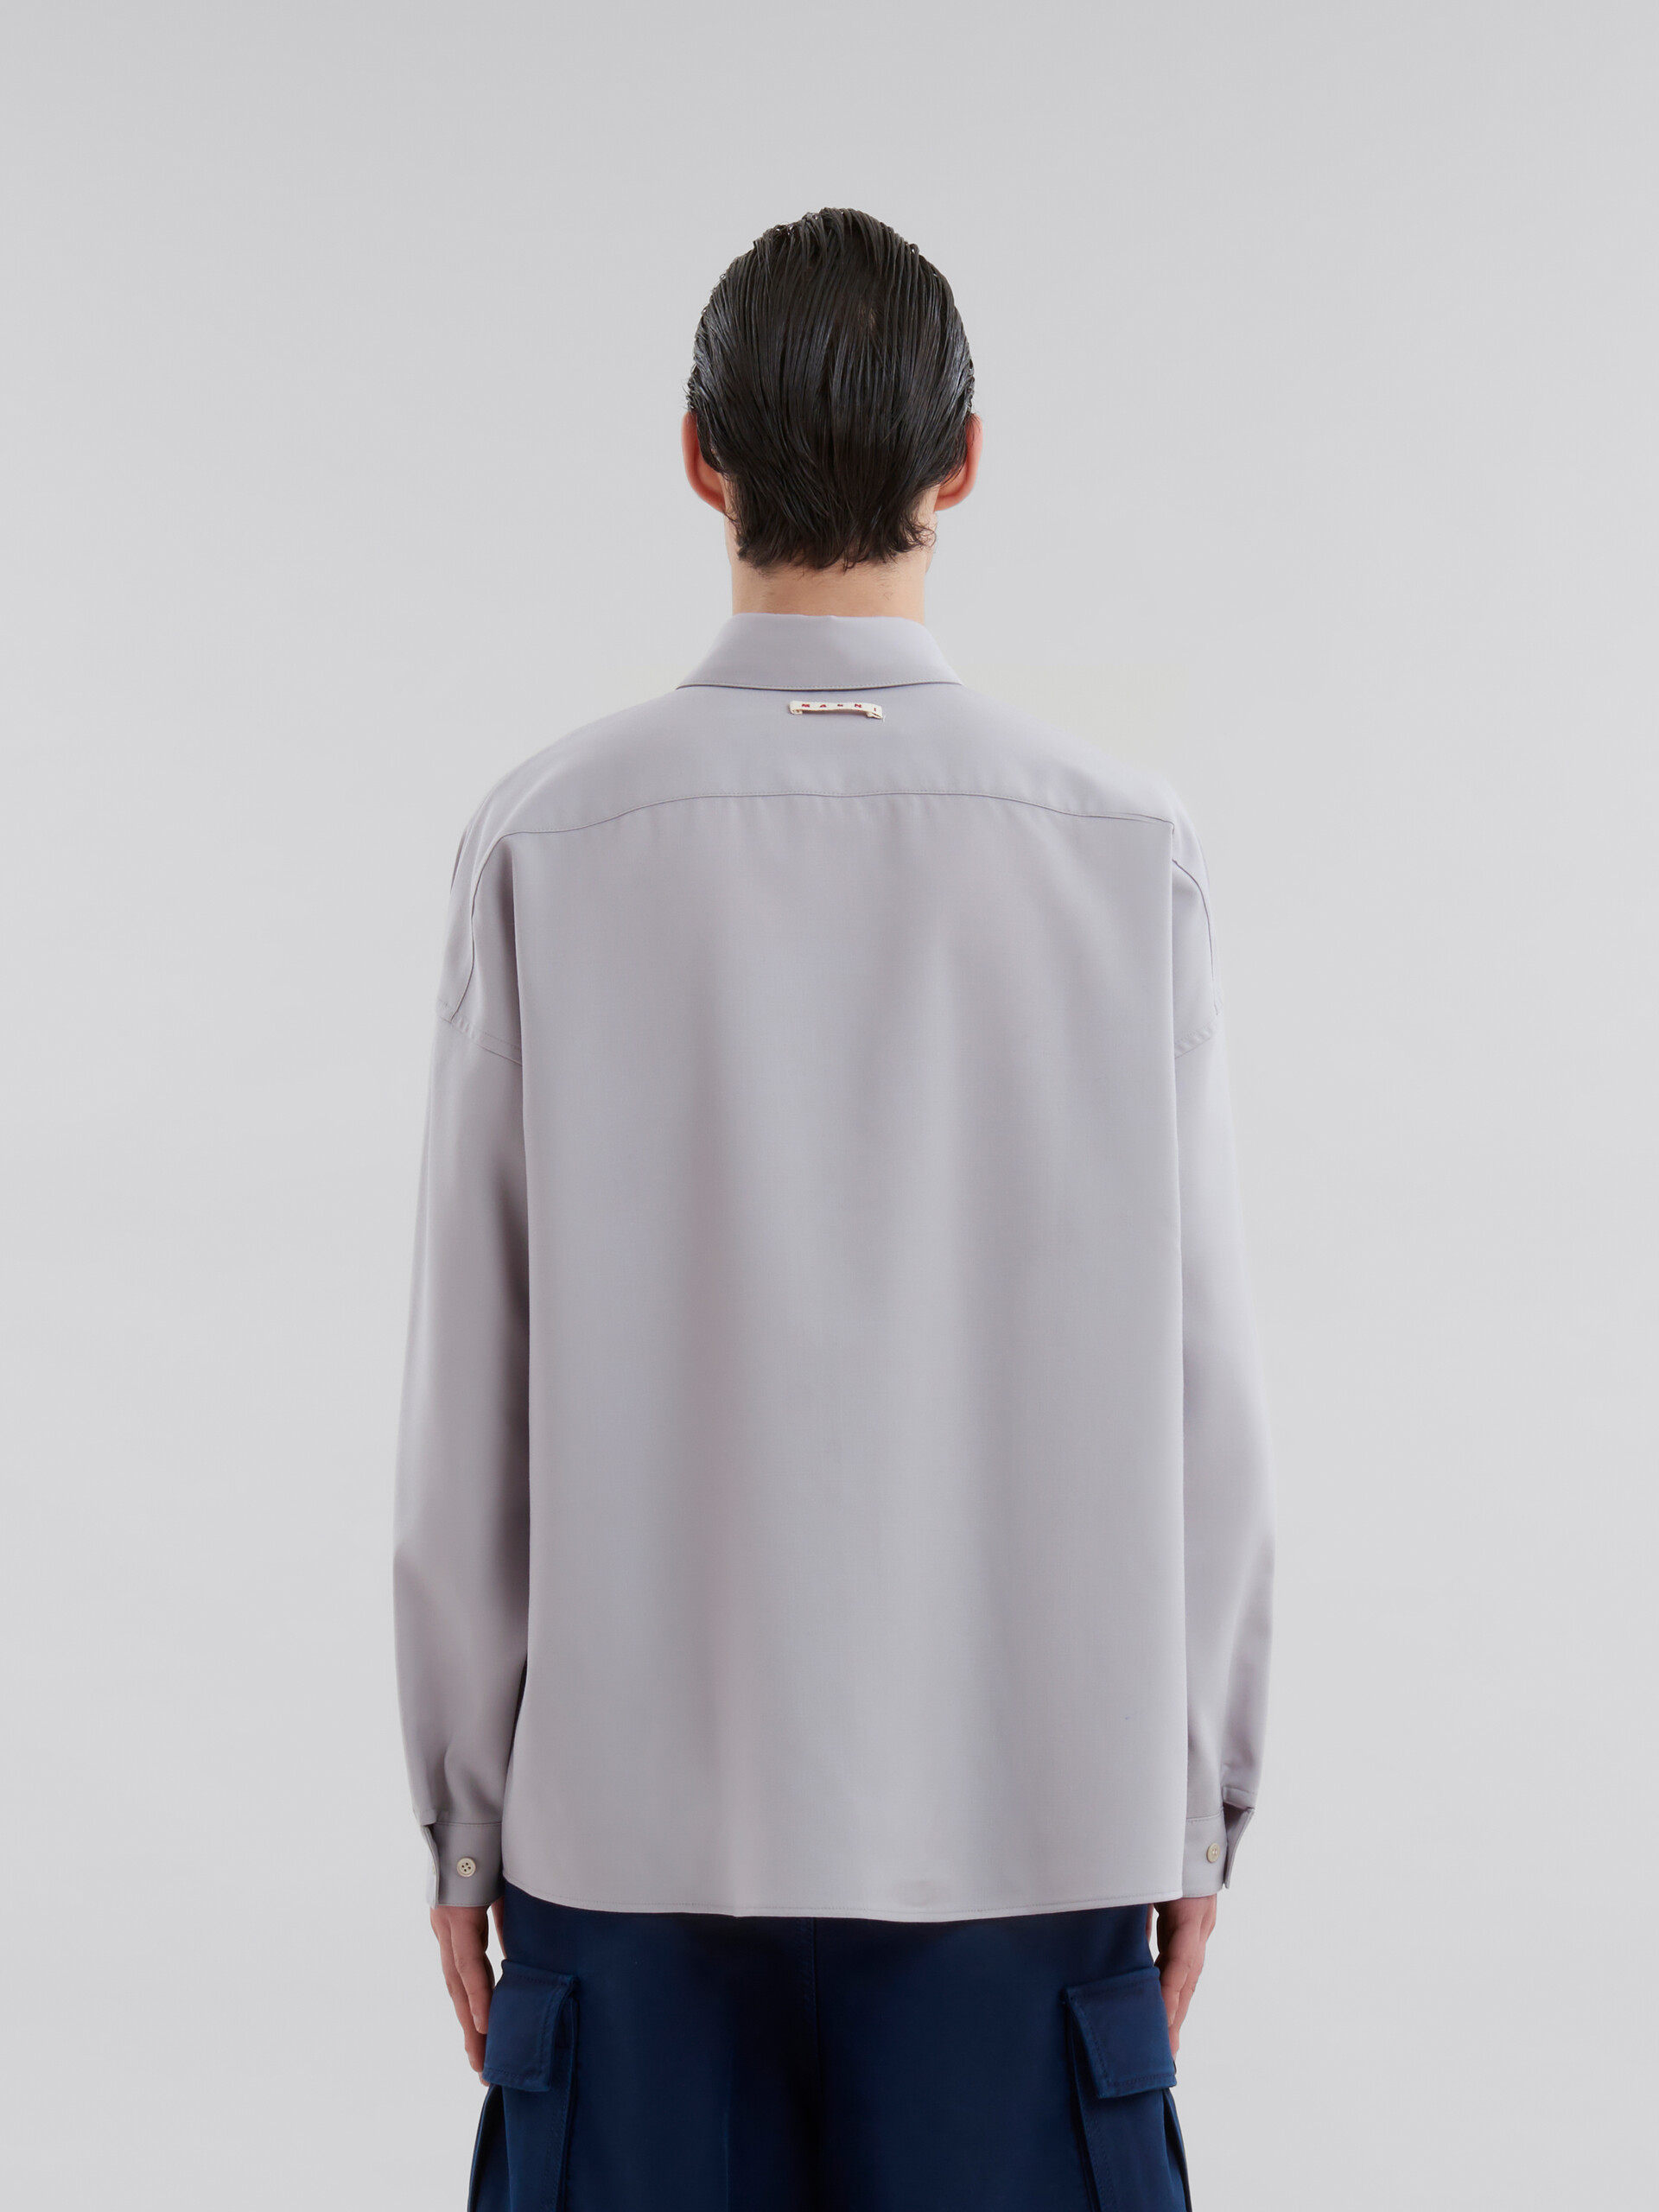 Dunkelblaues langärmeliges Hemd aus Tropenwolle - Hemden - Image 3